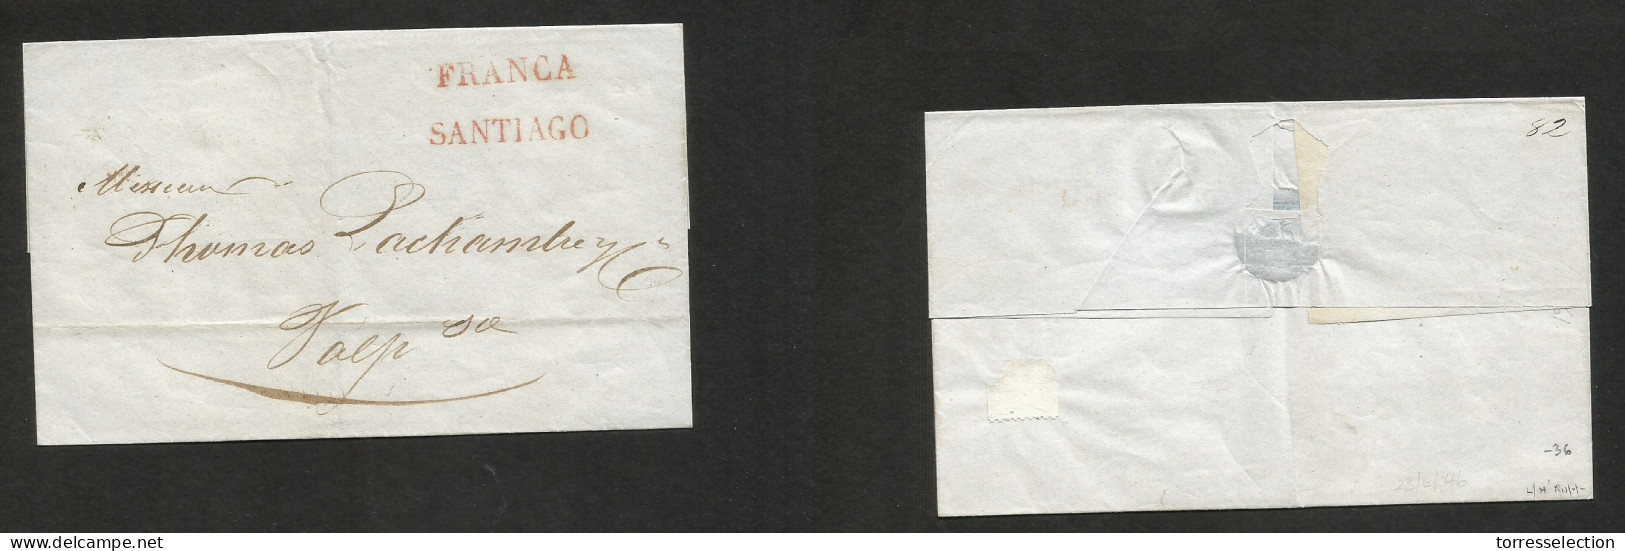 CHILE. 1846 (29 June) Stgo - Valp. E. Stline "FRANCIA" + "SANTIAGO" VF Item Condition. SALE. - Chili